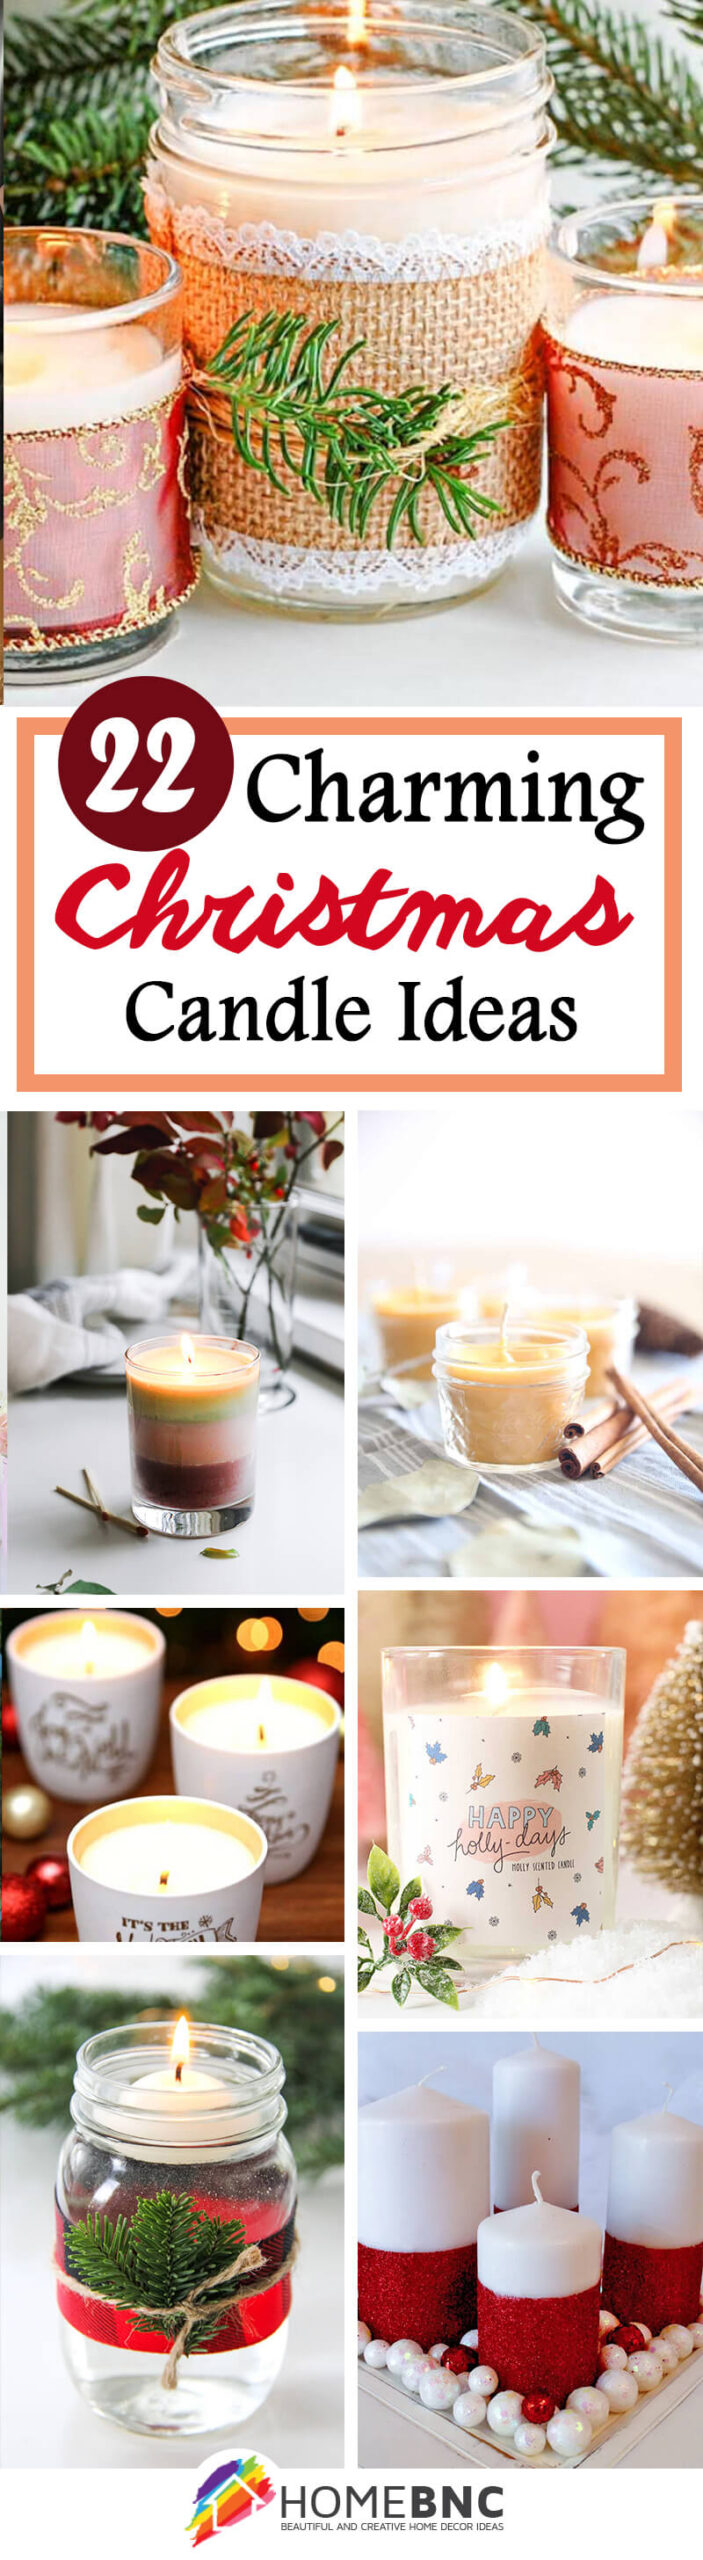  DIY Christmas Candle Ideas